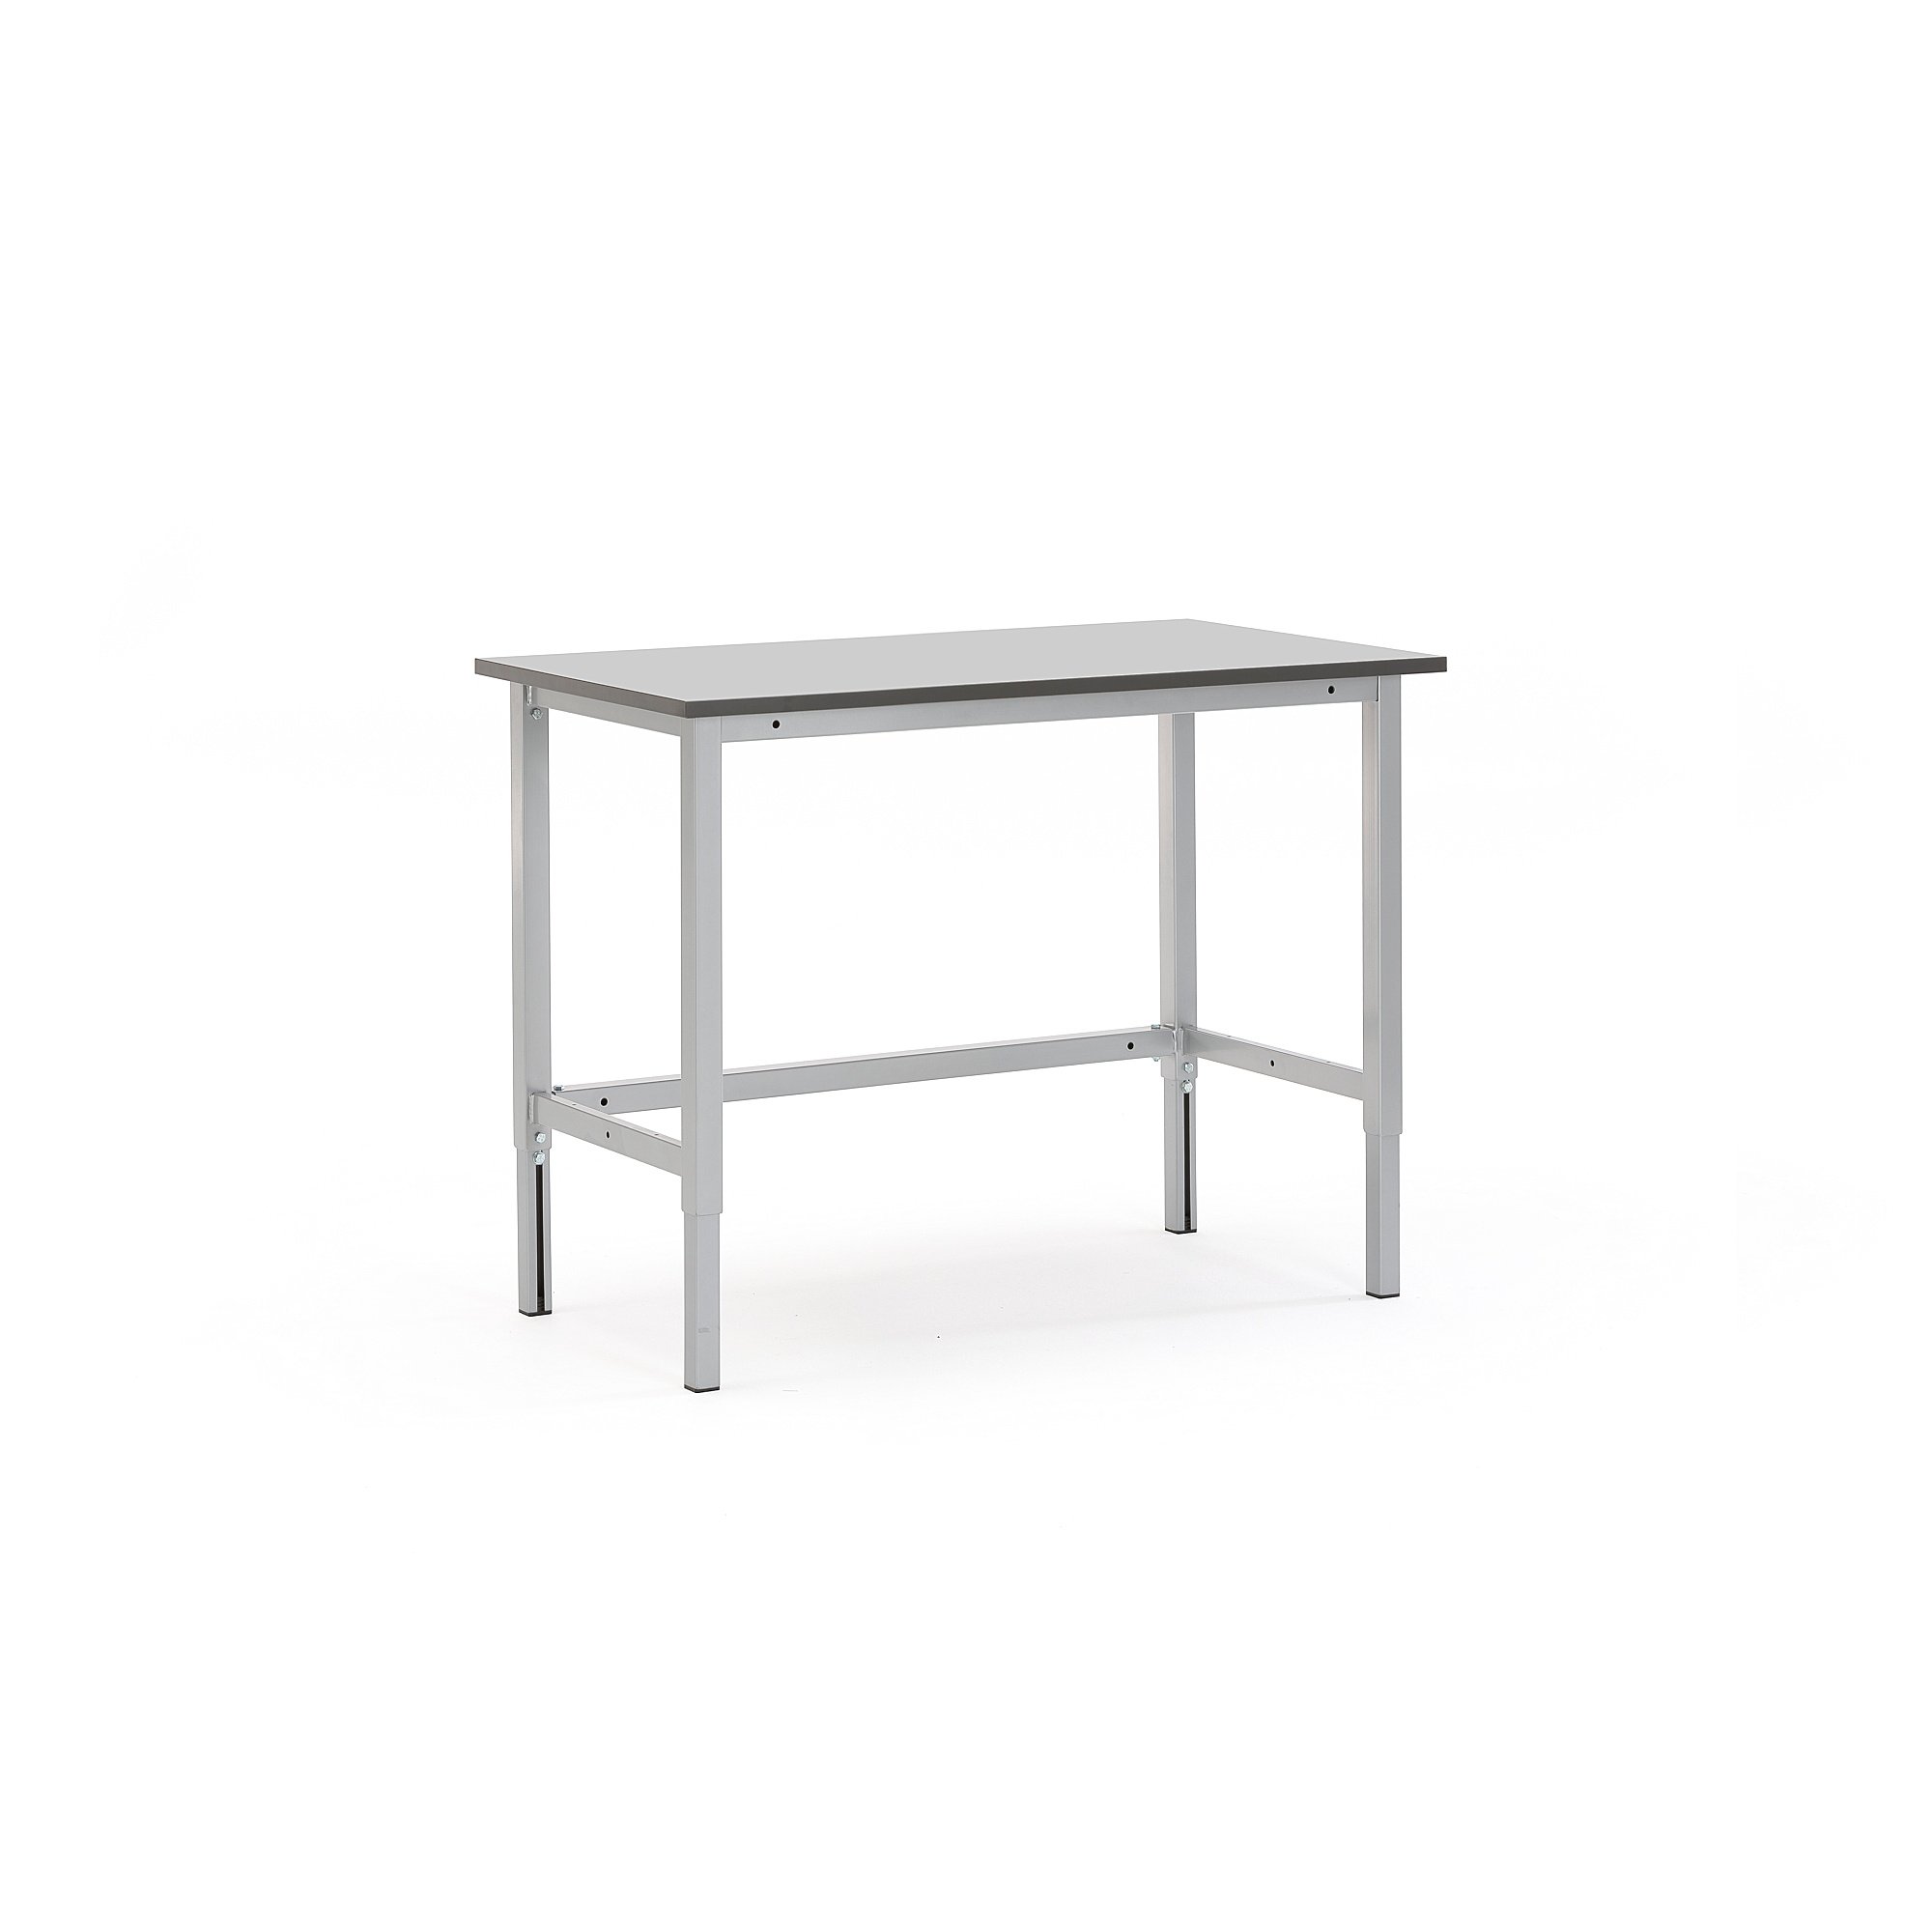 Pracovní stůl MOTION, 1200x600 mm, nosnost 400 kg, šedá deska HPL